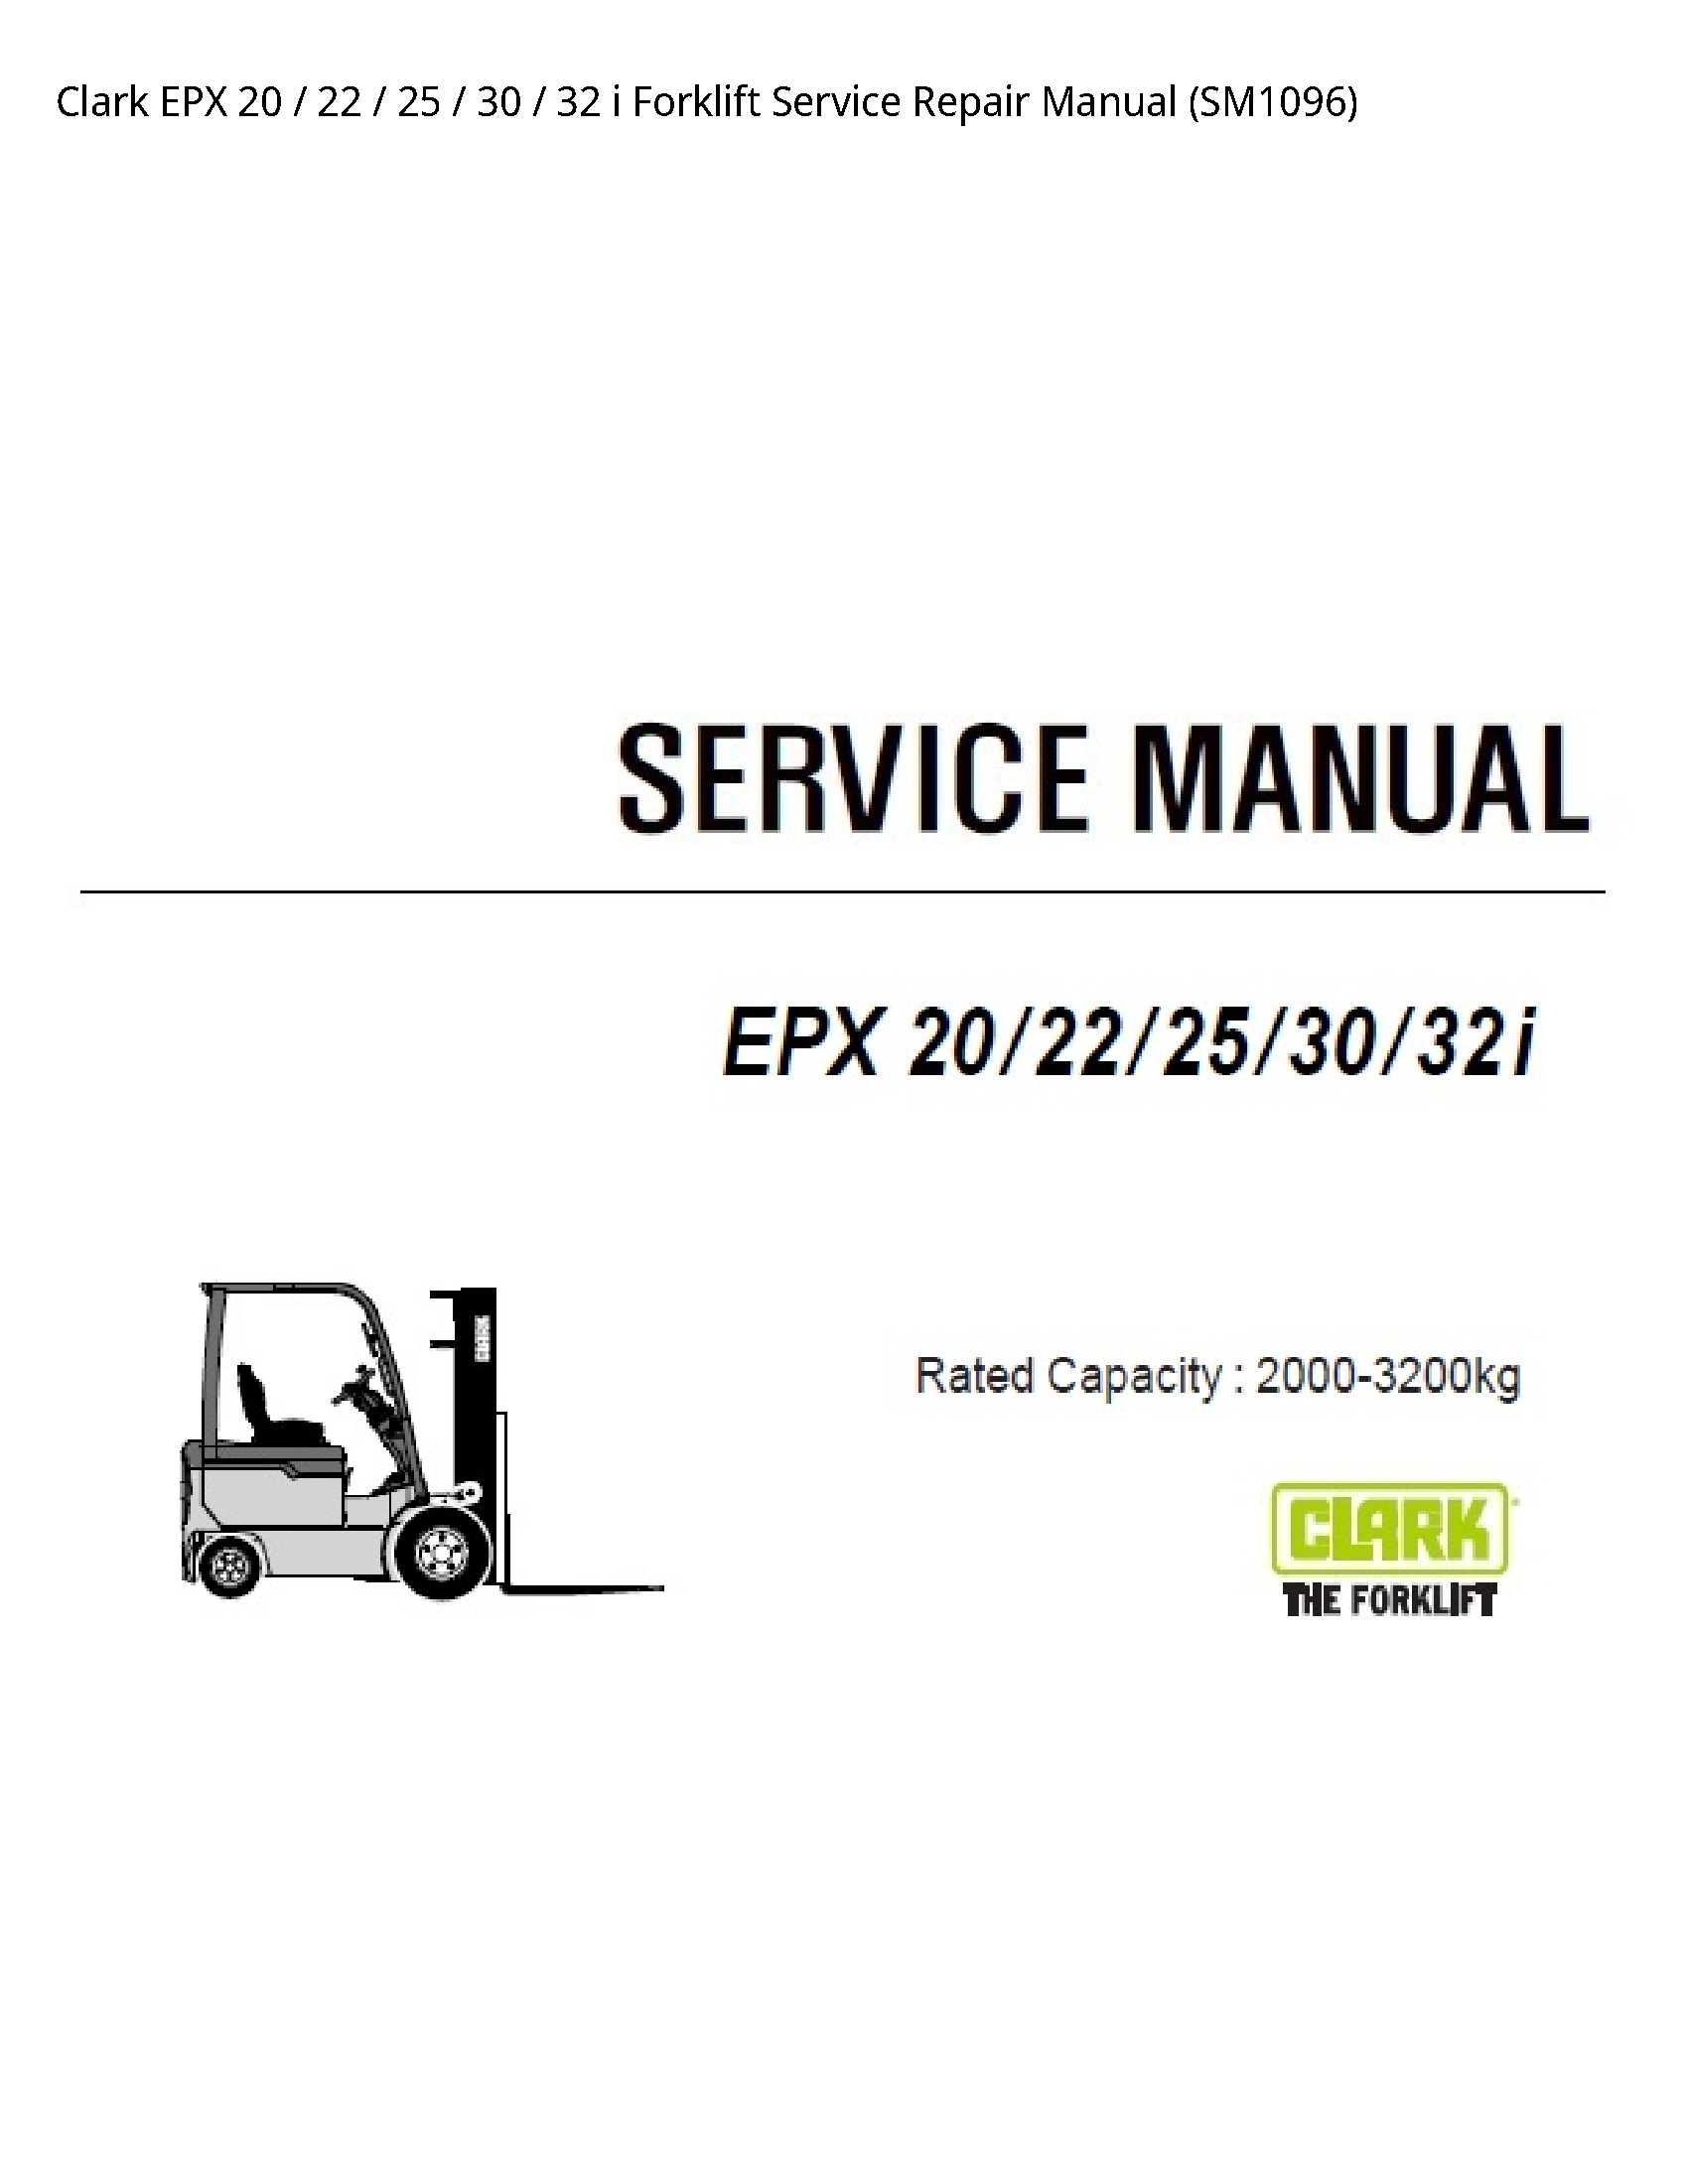 Clark 20 EPX Forklift manual